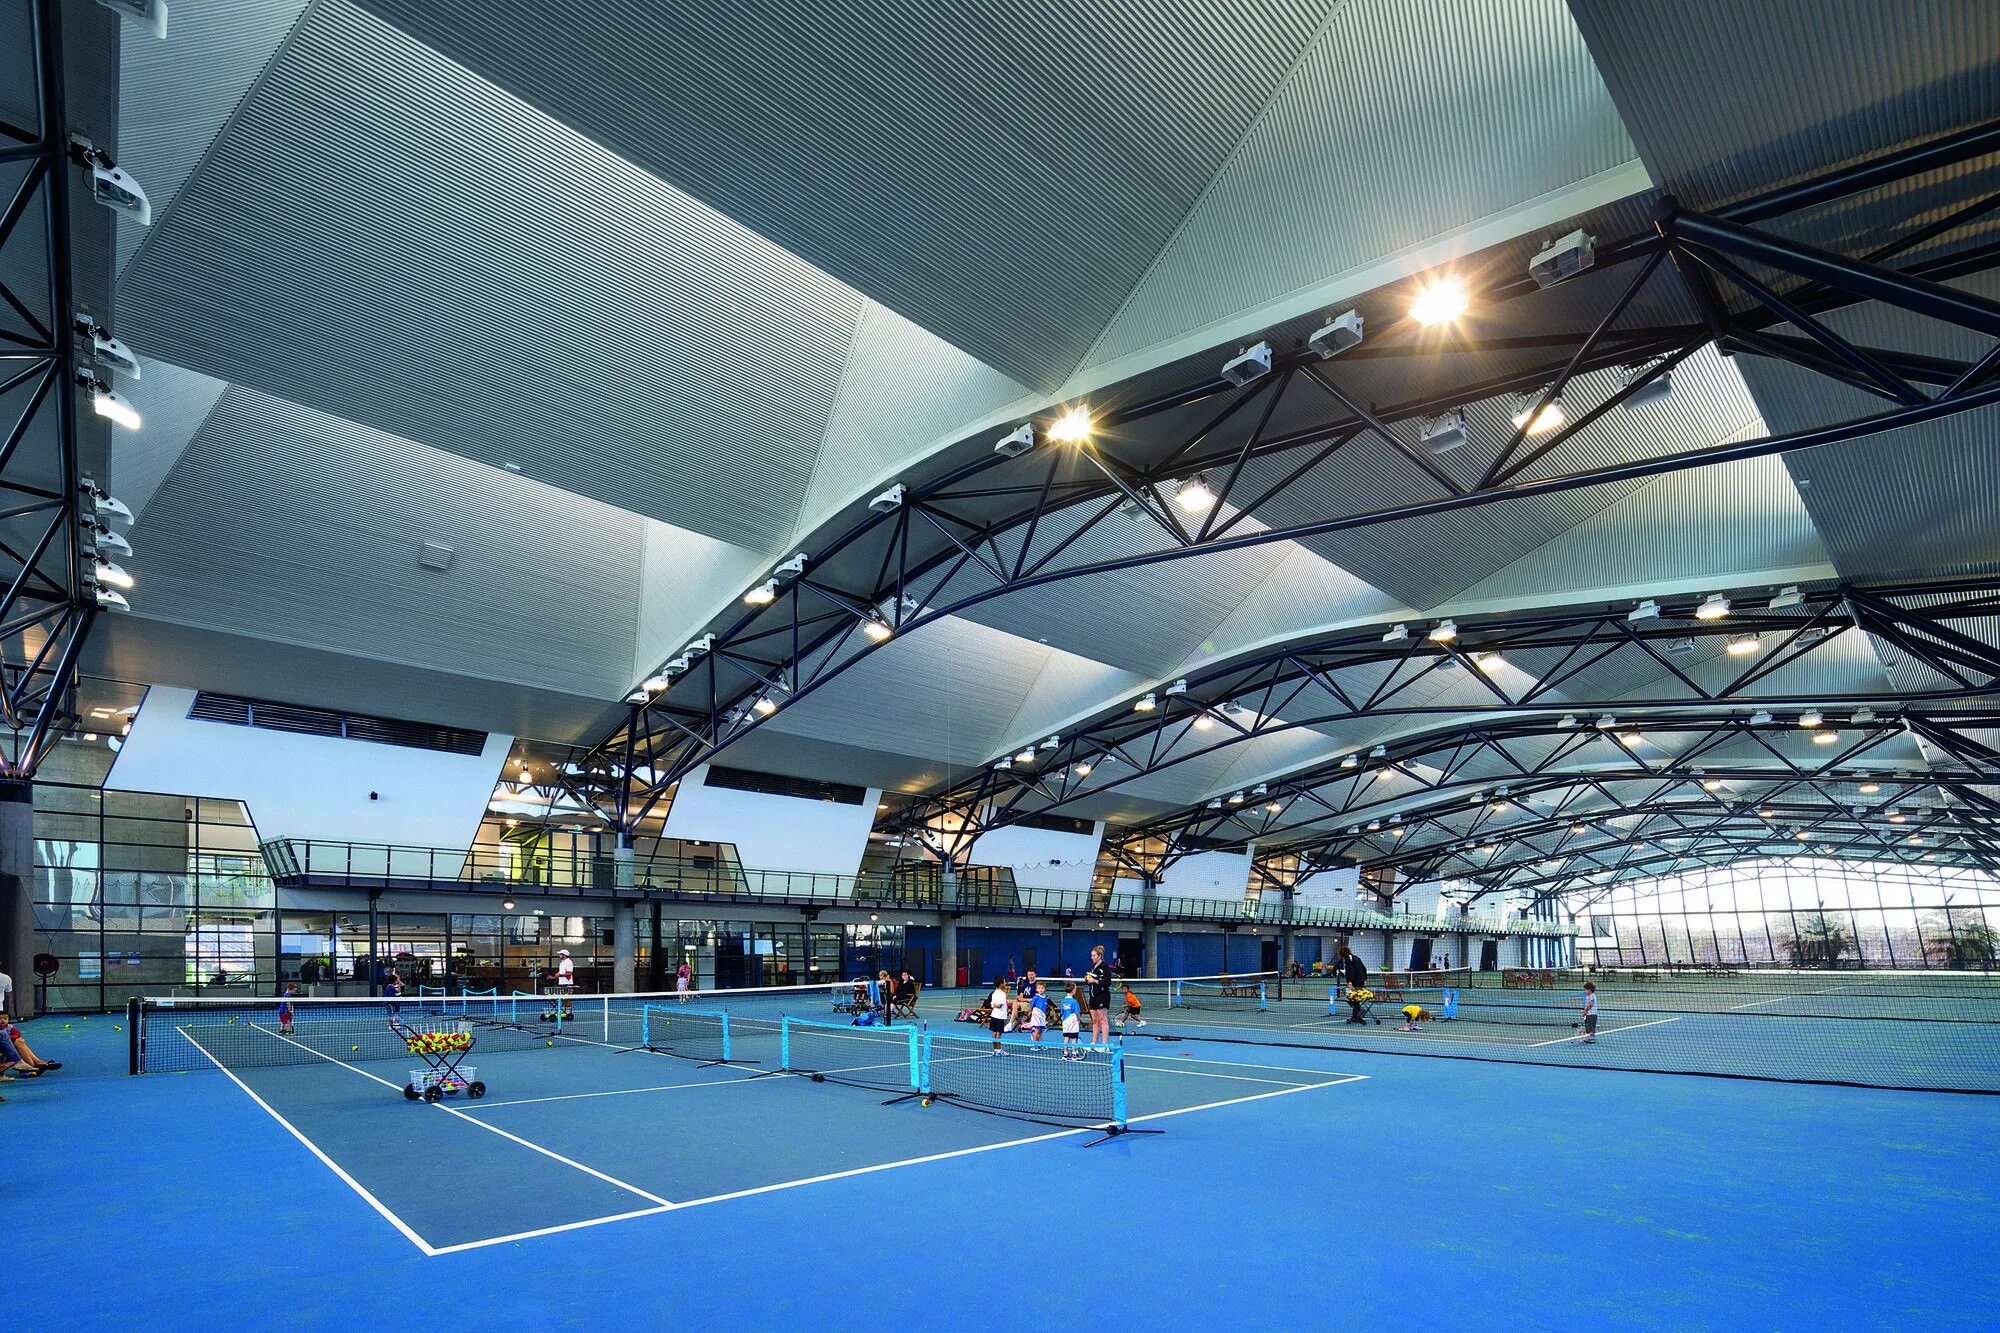 Tennis centre. Neo geo теннисный корт. Крытая спортивная Арена в Нью-Хавене (США). Спортивные здания. Современный спортивный комплекс.